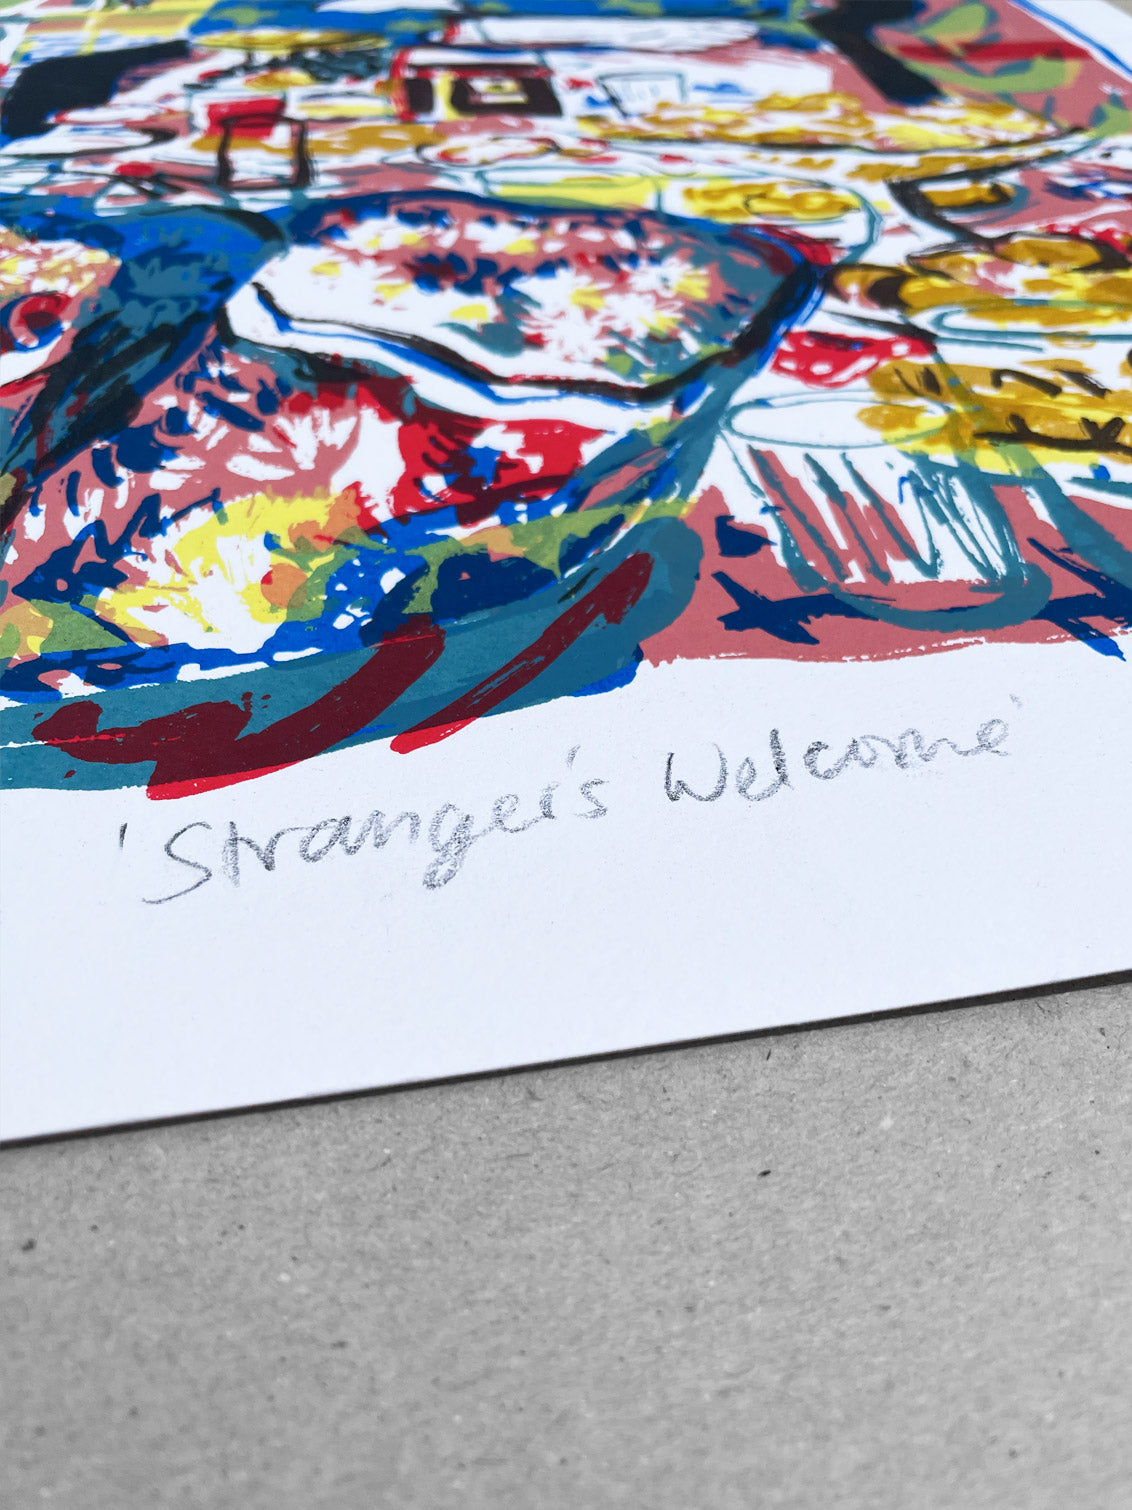 Stranger’s Welcome